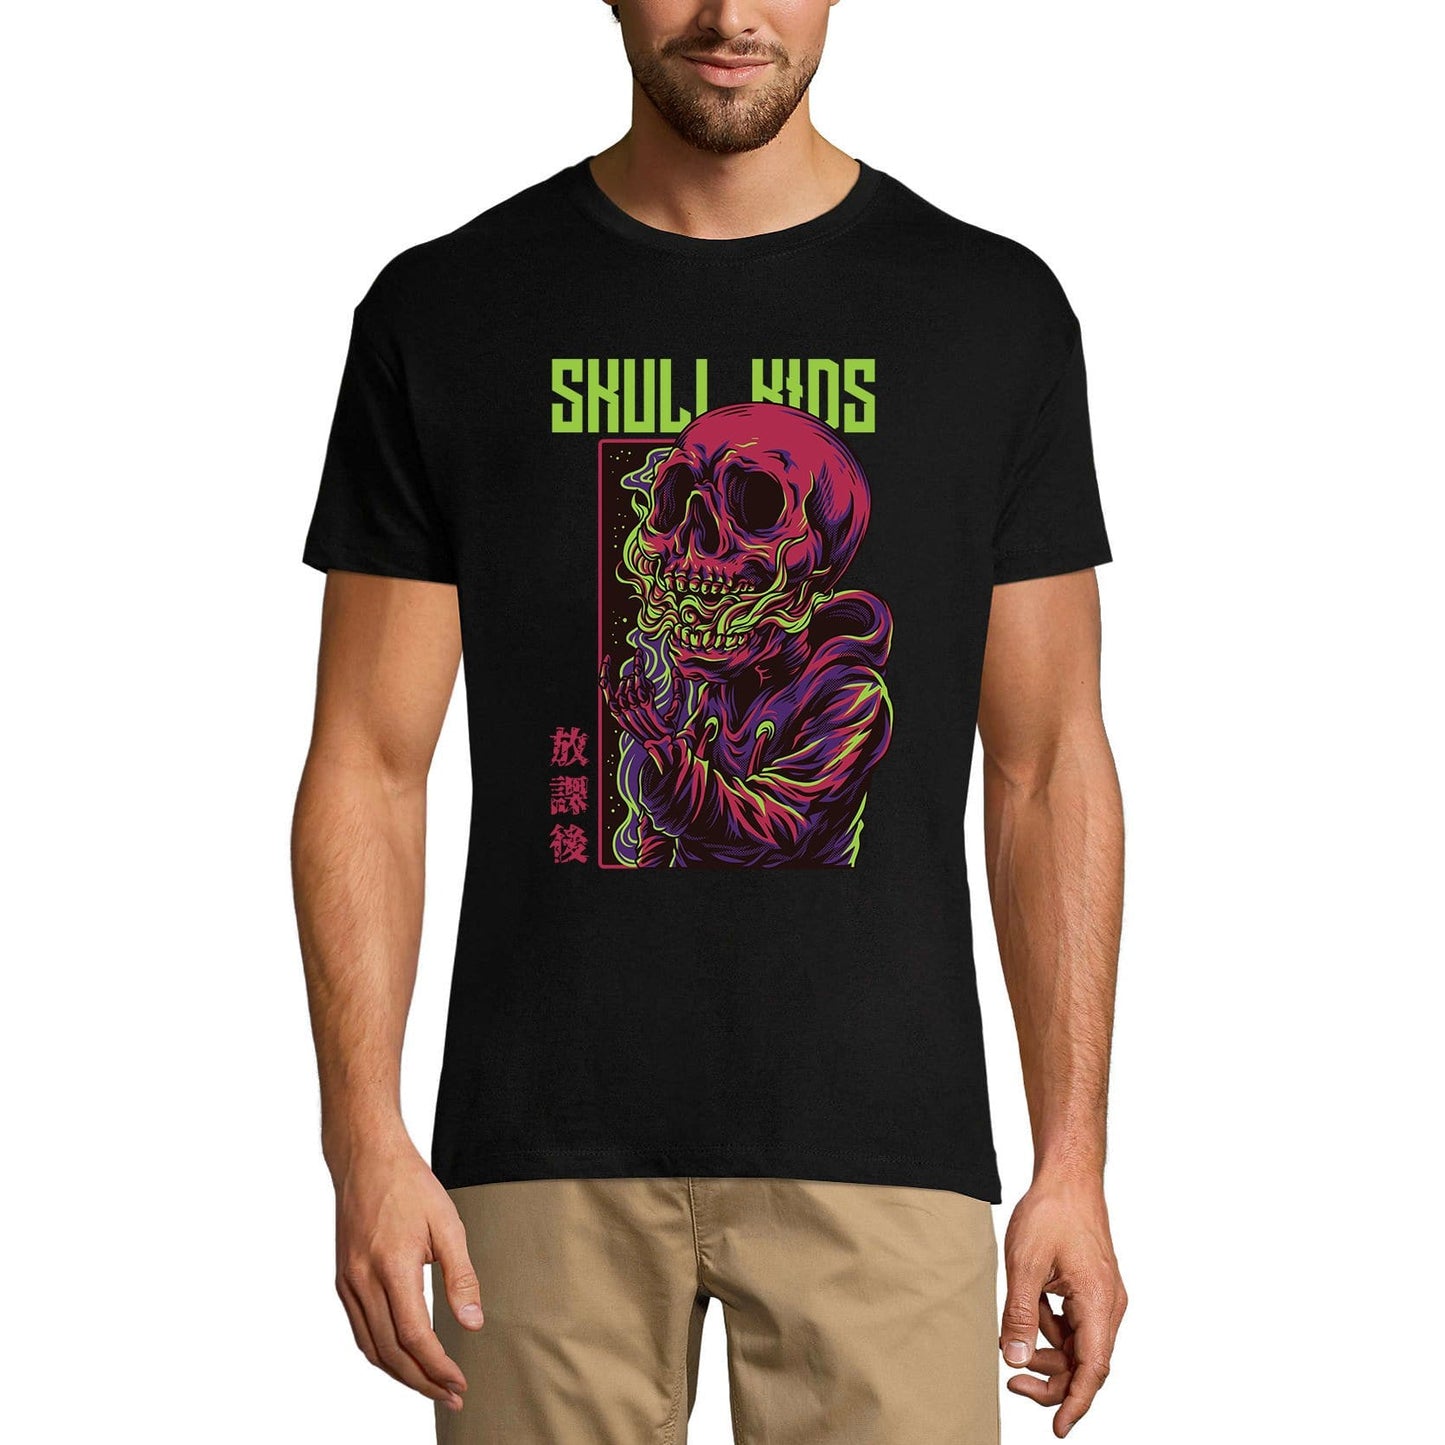 ULTRABASIC Men's Novelty T-Shirt Skull Kids - Scary Short Sleeve Tee Shirt